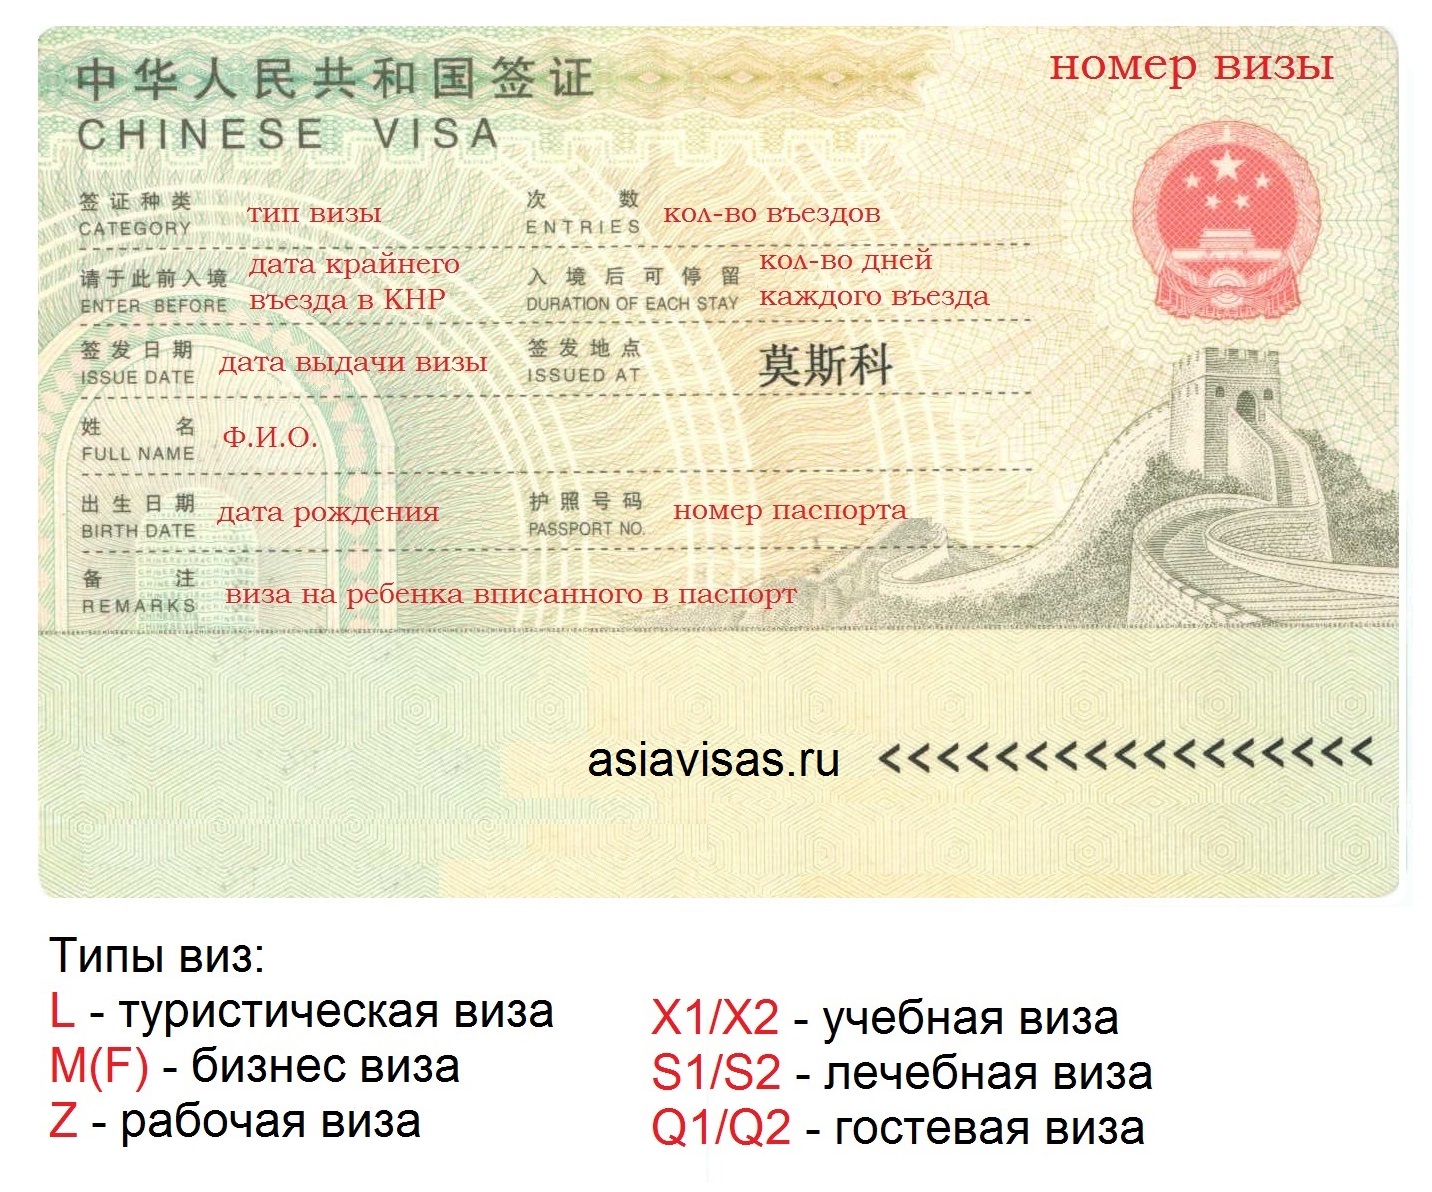 Виза в китай для россиян в 2021 году: инструкция для самостоятельного оформления